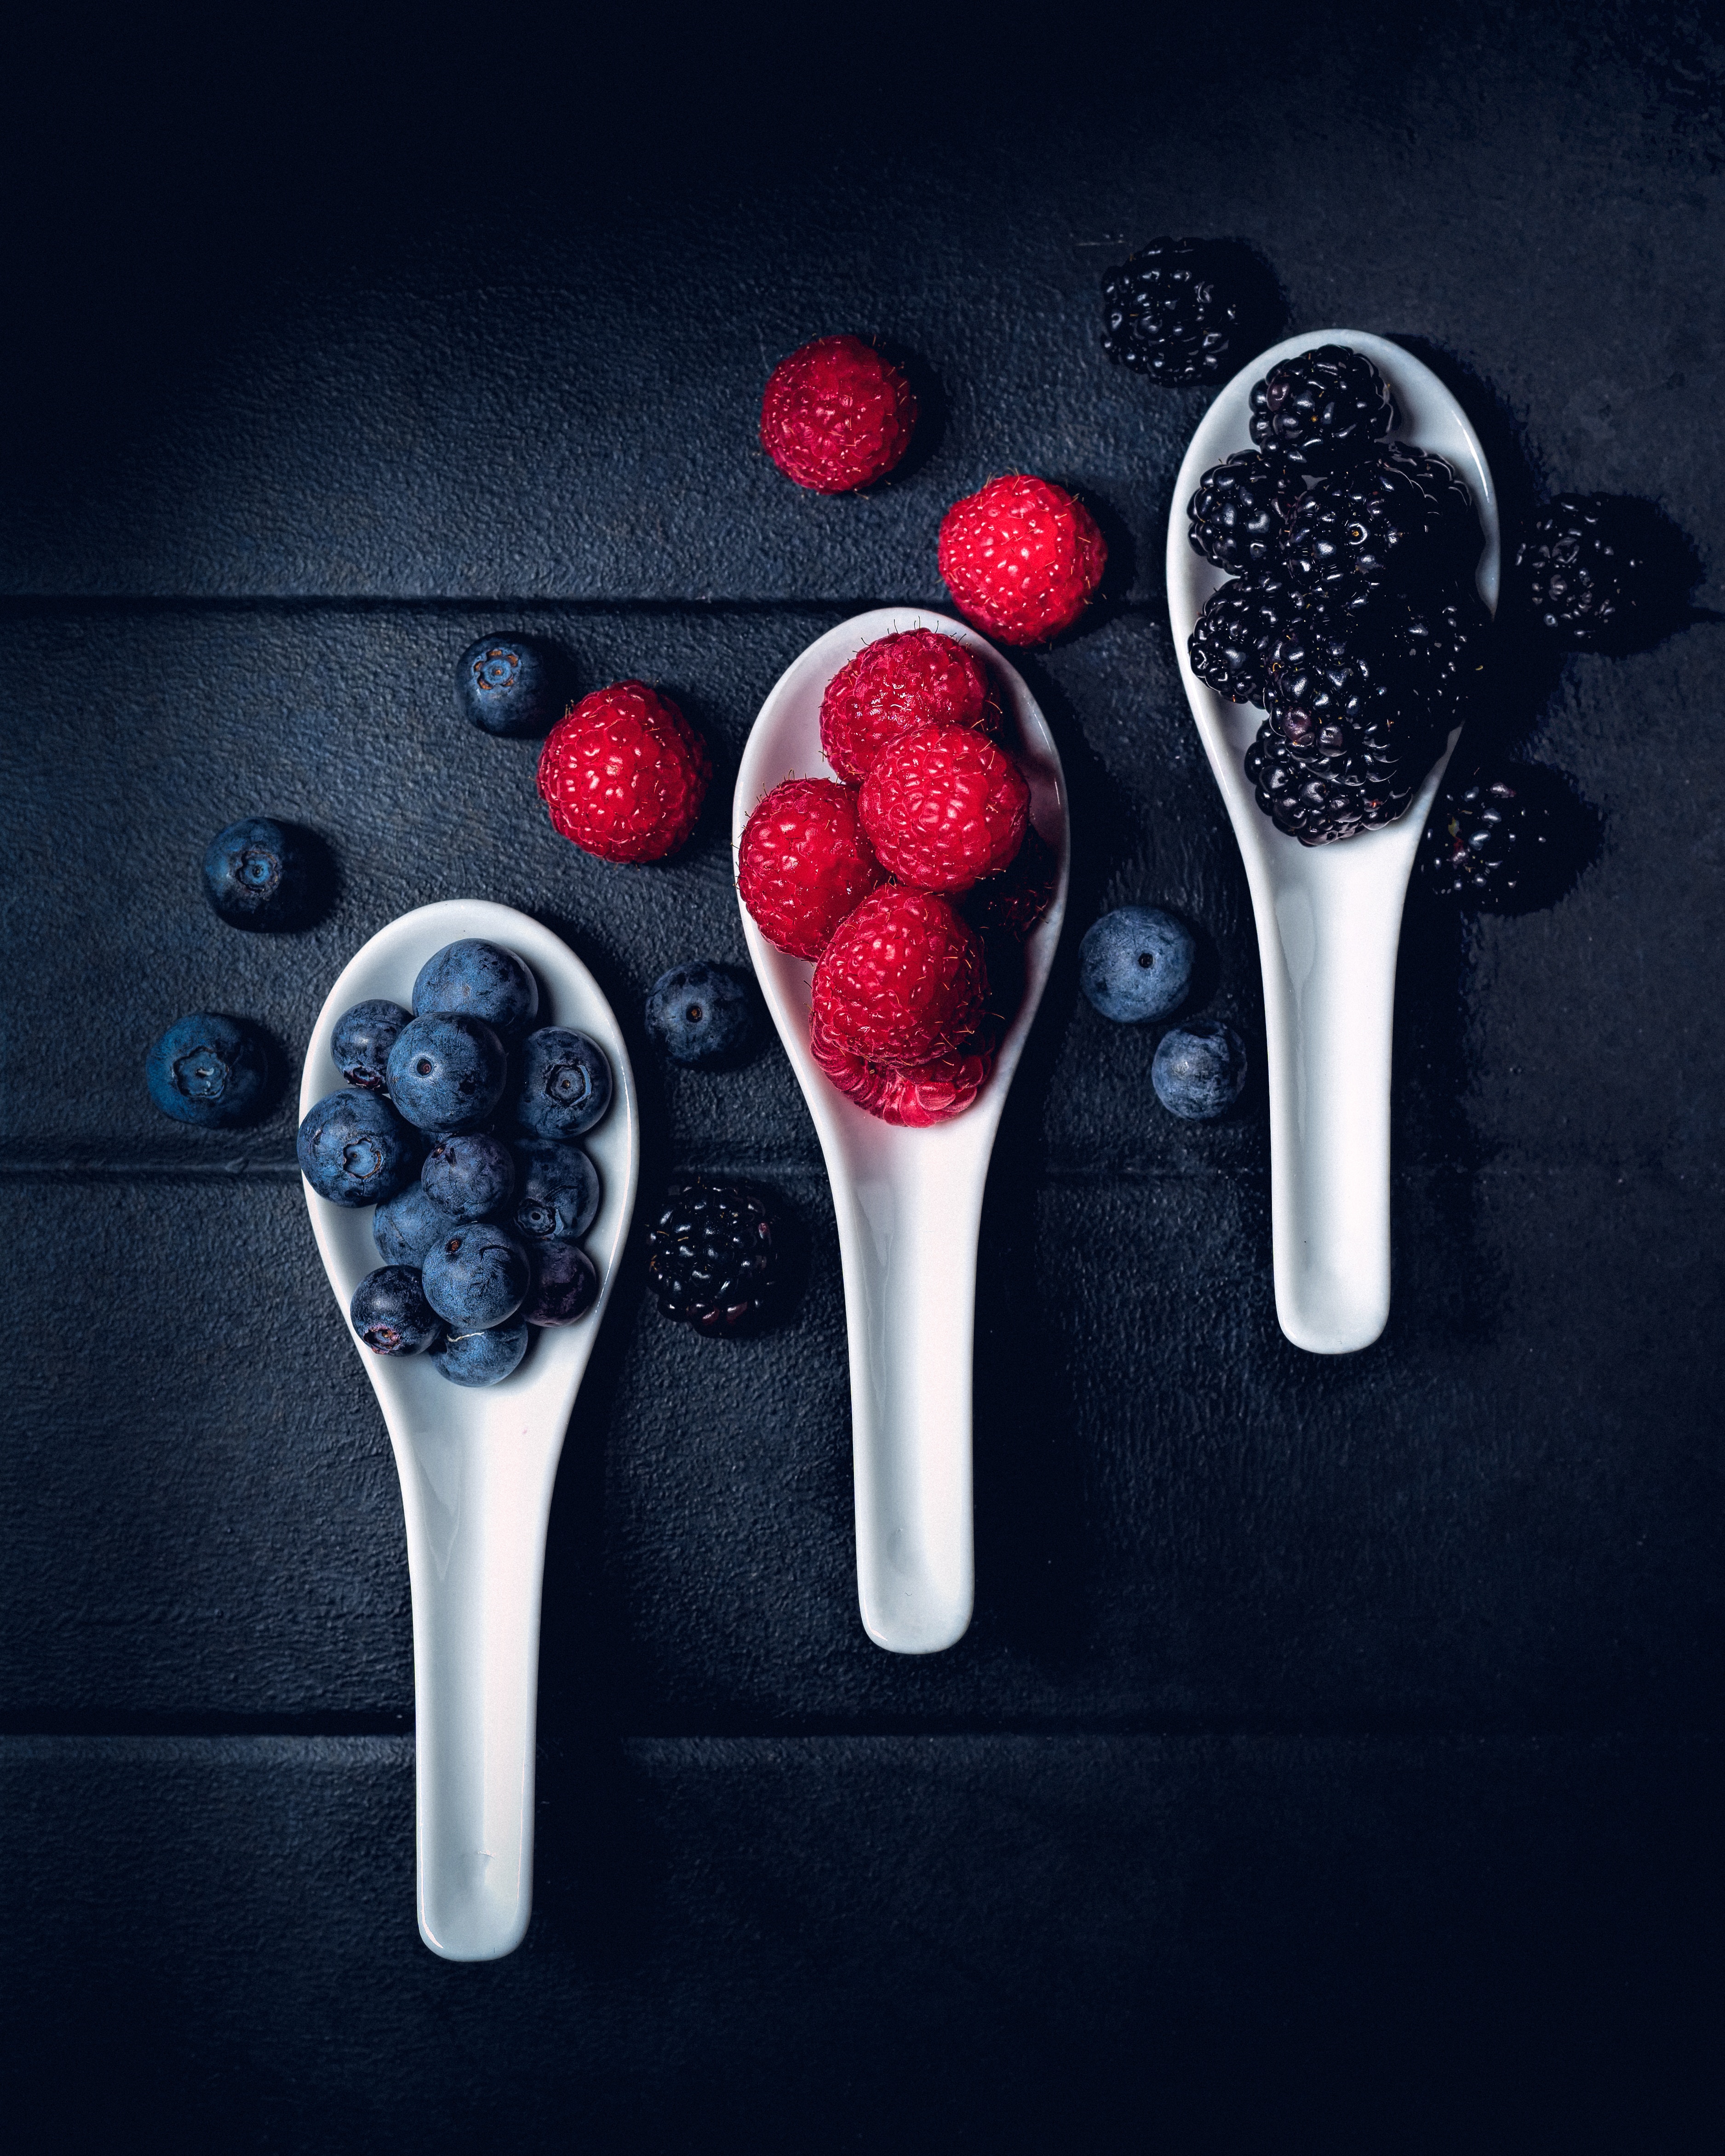 Free HD berries, food, raspberry, bilberries, fresh, spoons